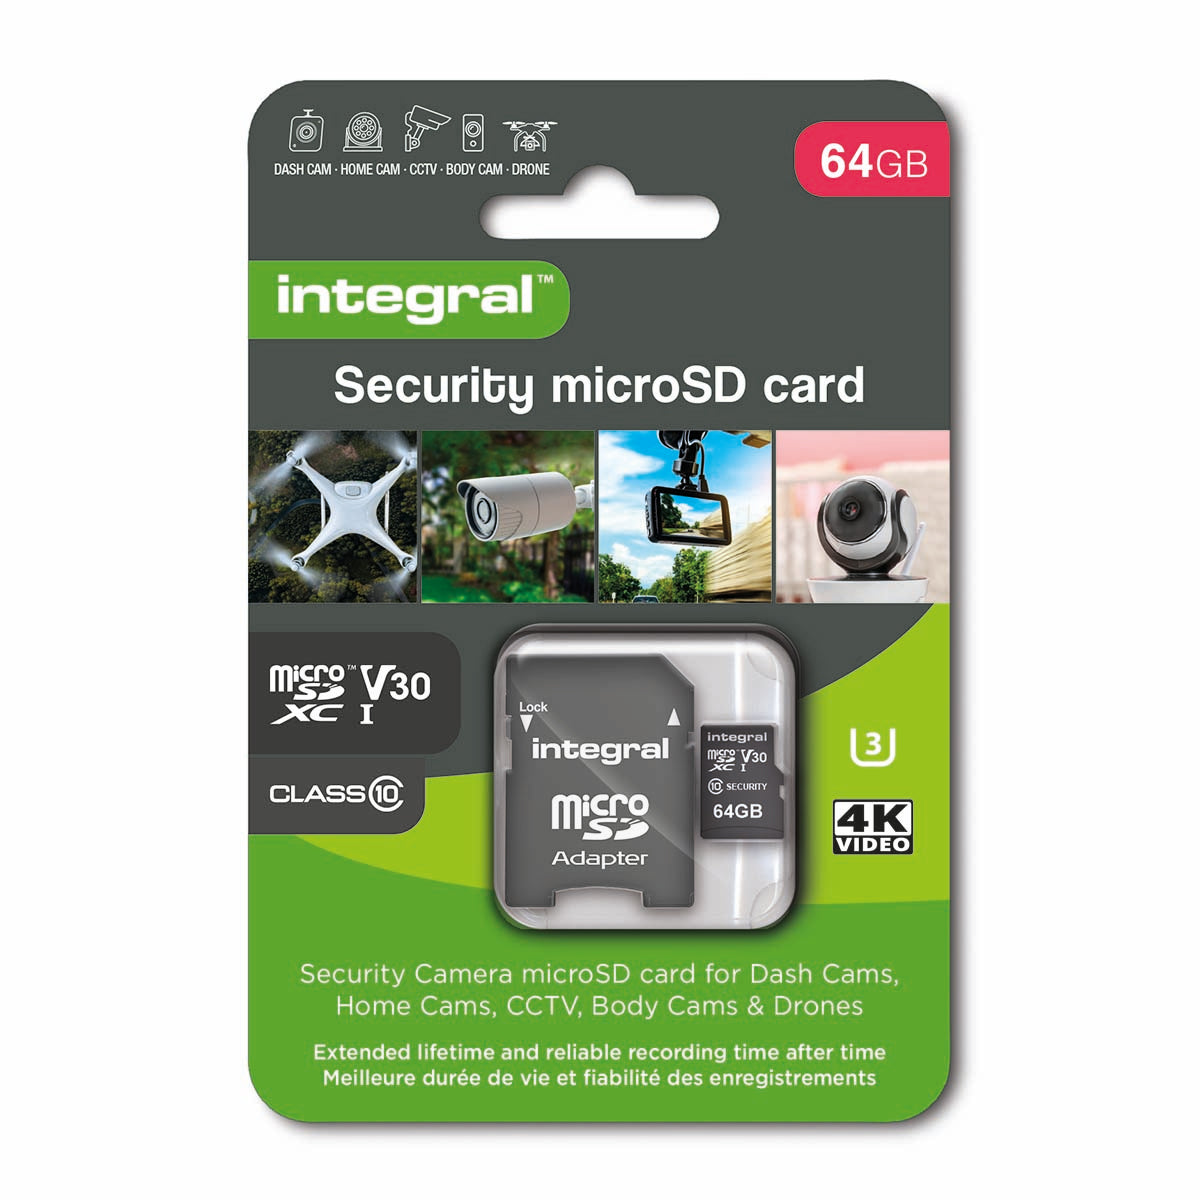 64 GB Überwachungskamera microSD-Karte für Dashcams, Home Cams, CCTV, Body Cams & Drohnen